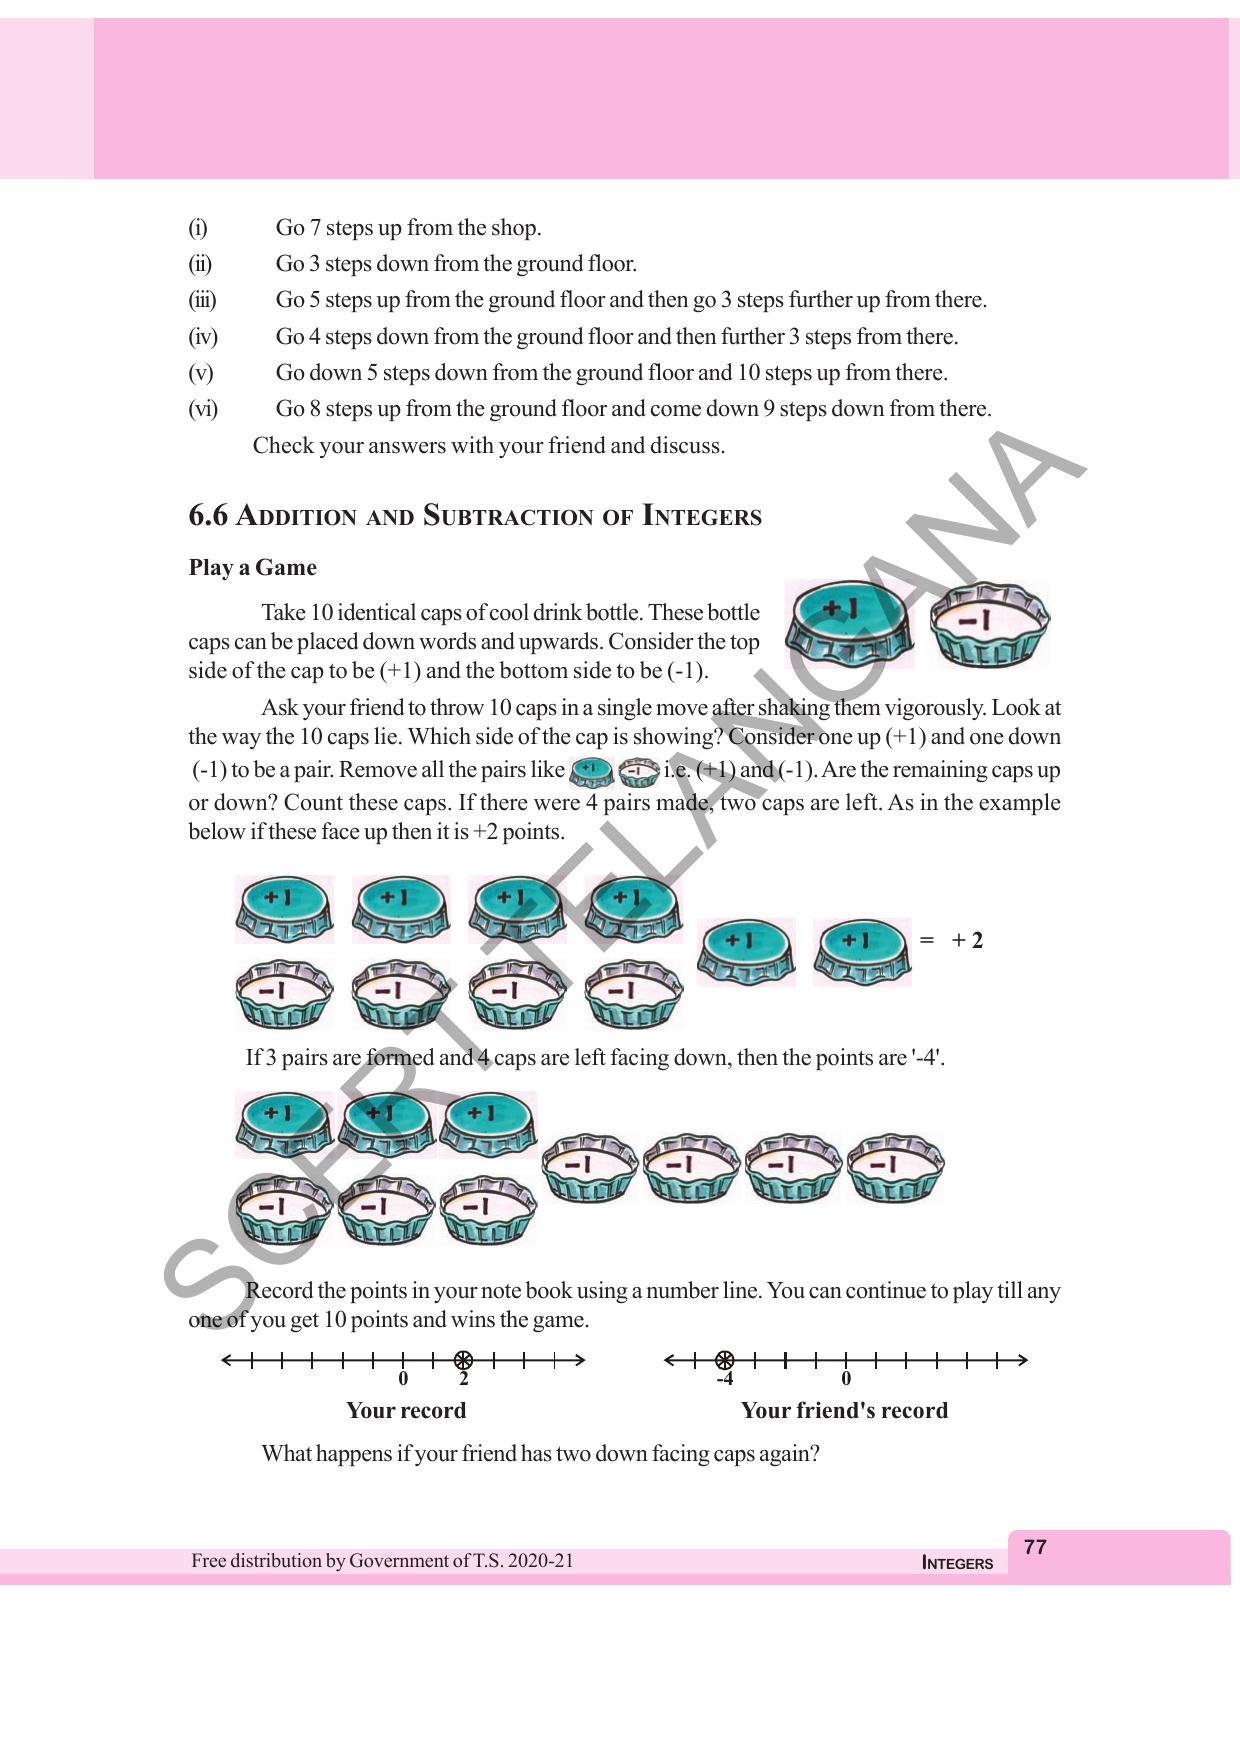 TS SCERT Class 6 Maths  (English Medium) Text Book - Page 85